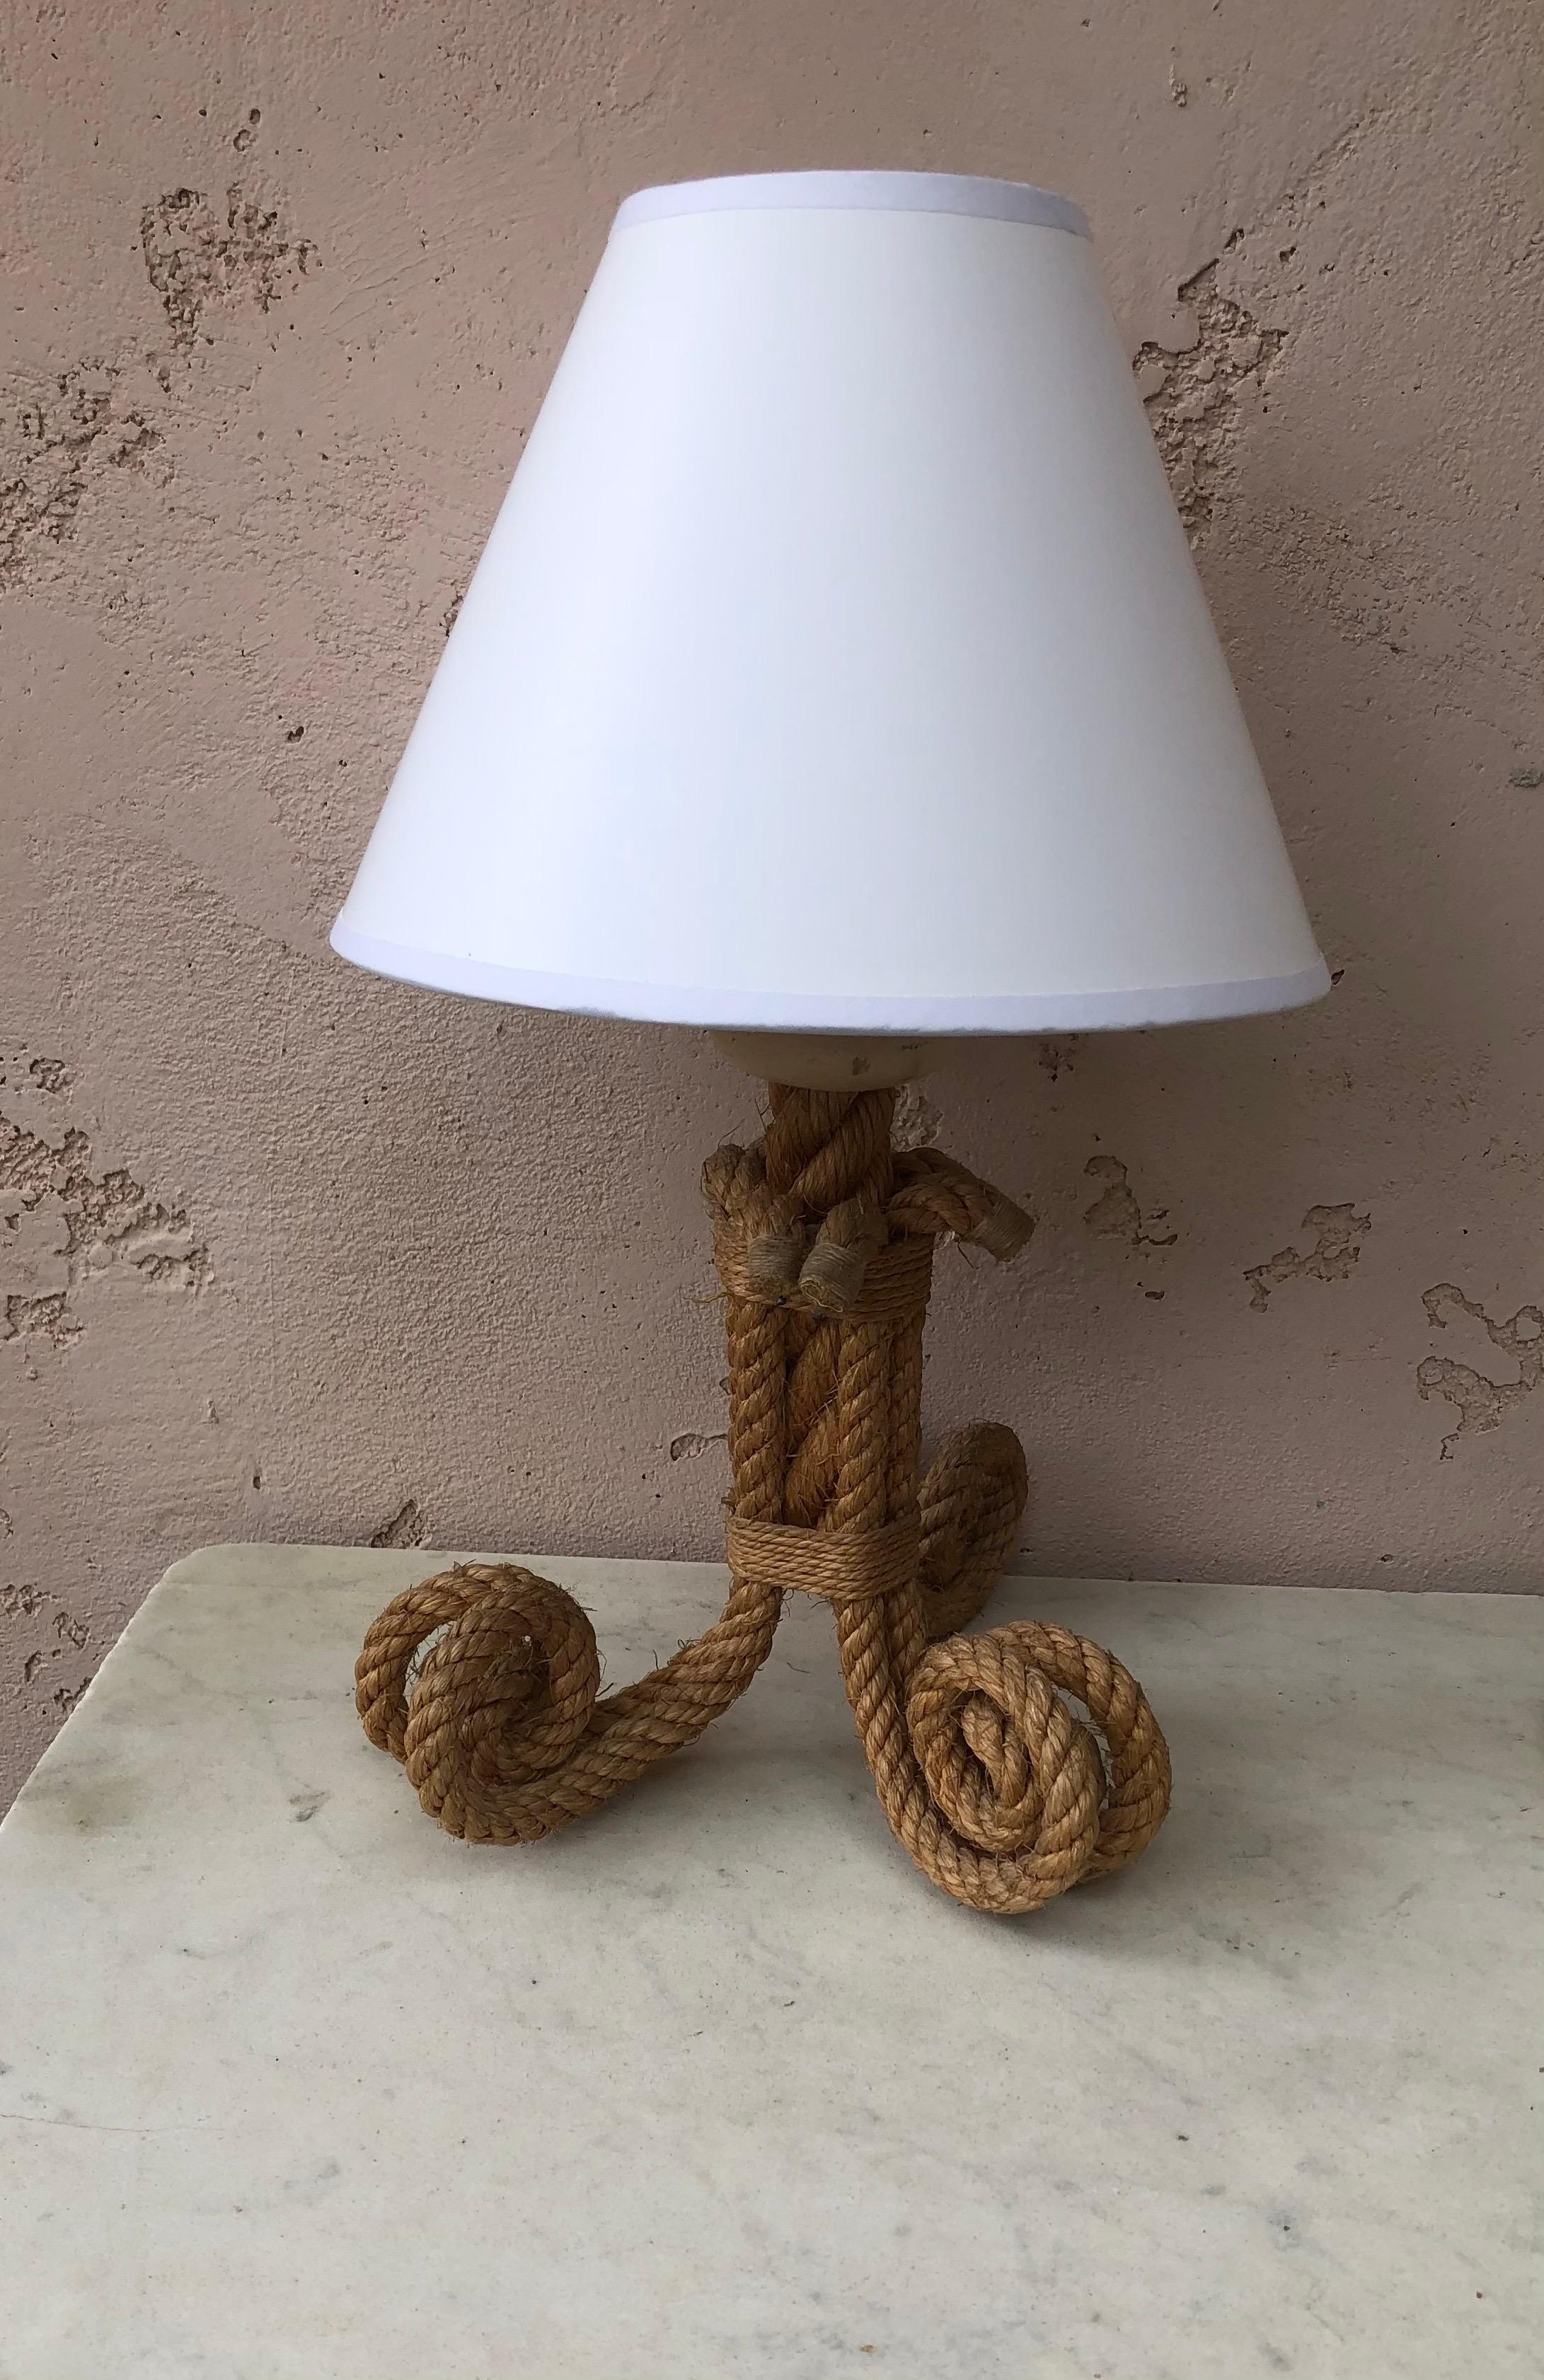 Lampe à corde du milieu du siècle par Audoux Minet.
Mesures : Hauteur / 15.3 pouces.
L'abat-jour inclus a un diamètre de 6,5 pouces.